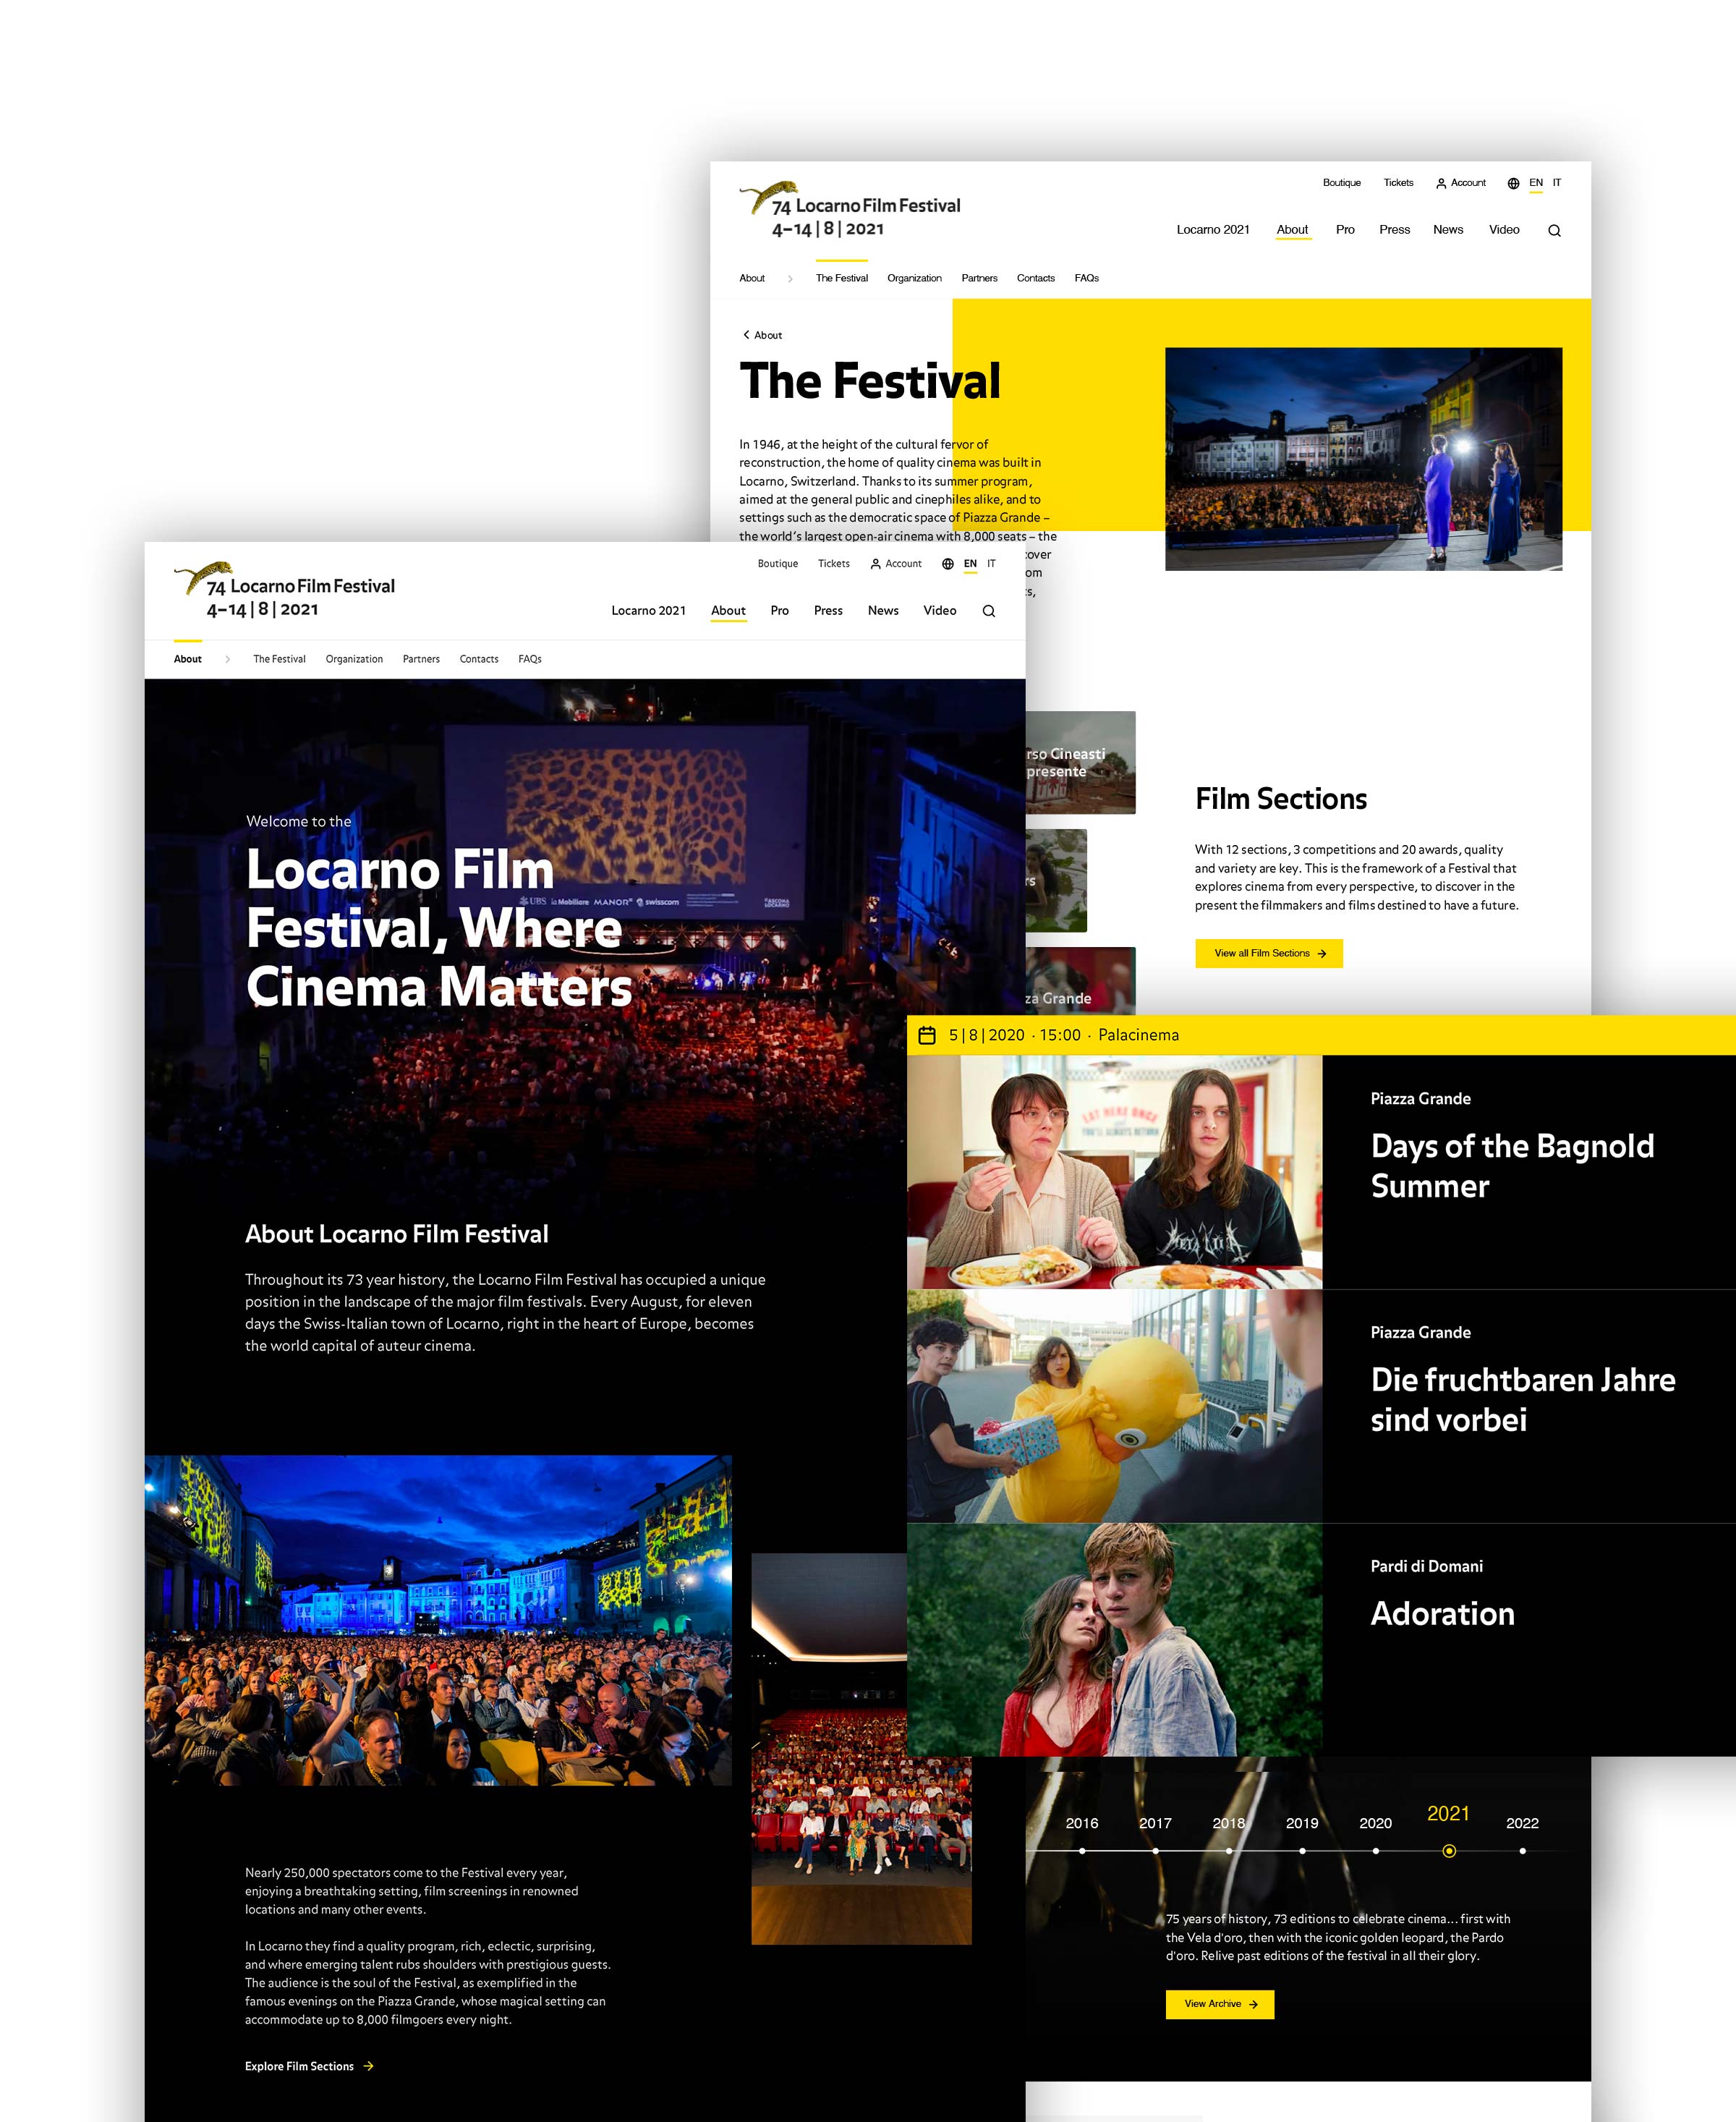 Interfacce principali della piattaforma Locarno Film Festival